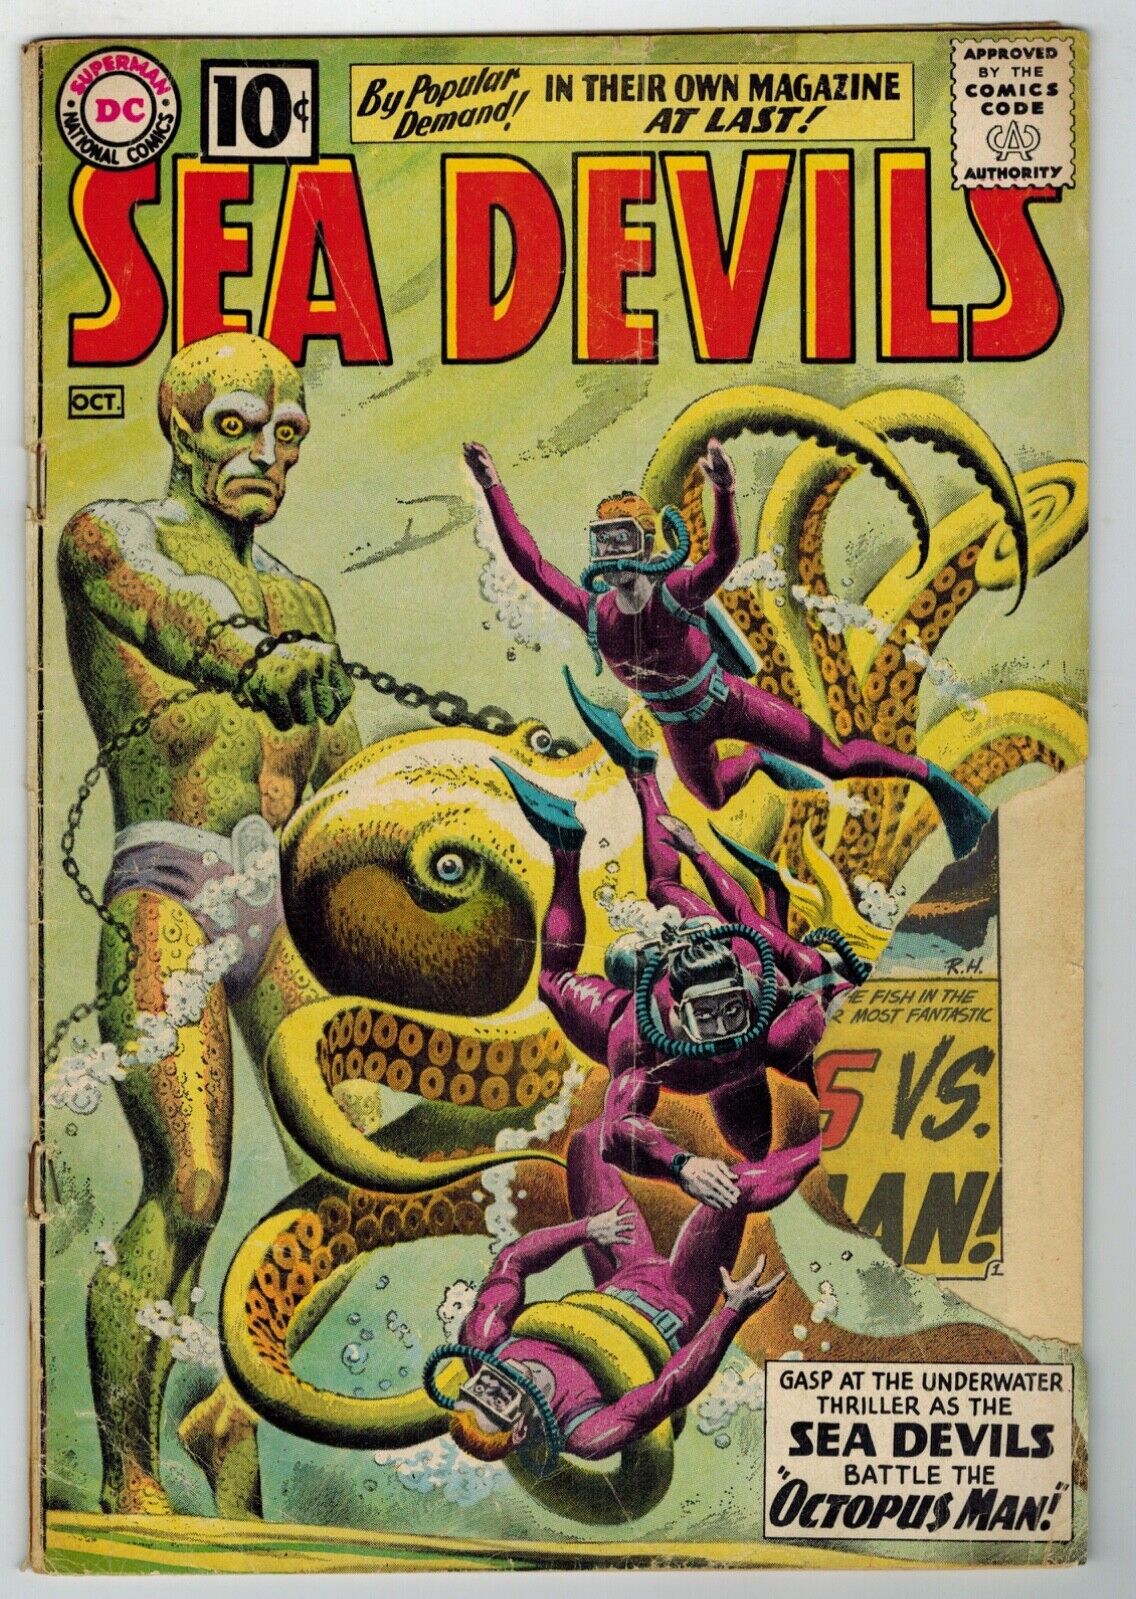 SEA DEVILS #1 DC Comics 1961 Missing large cover piece